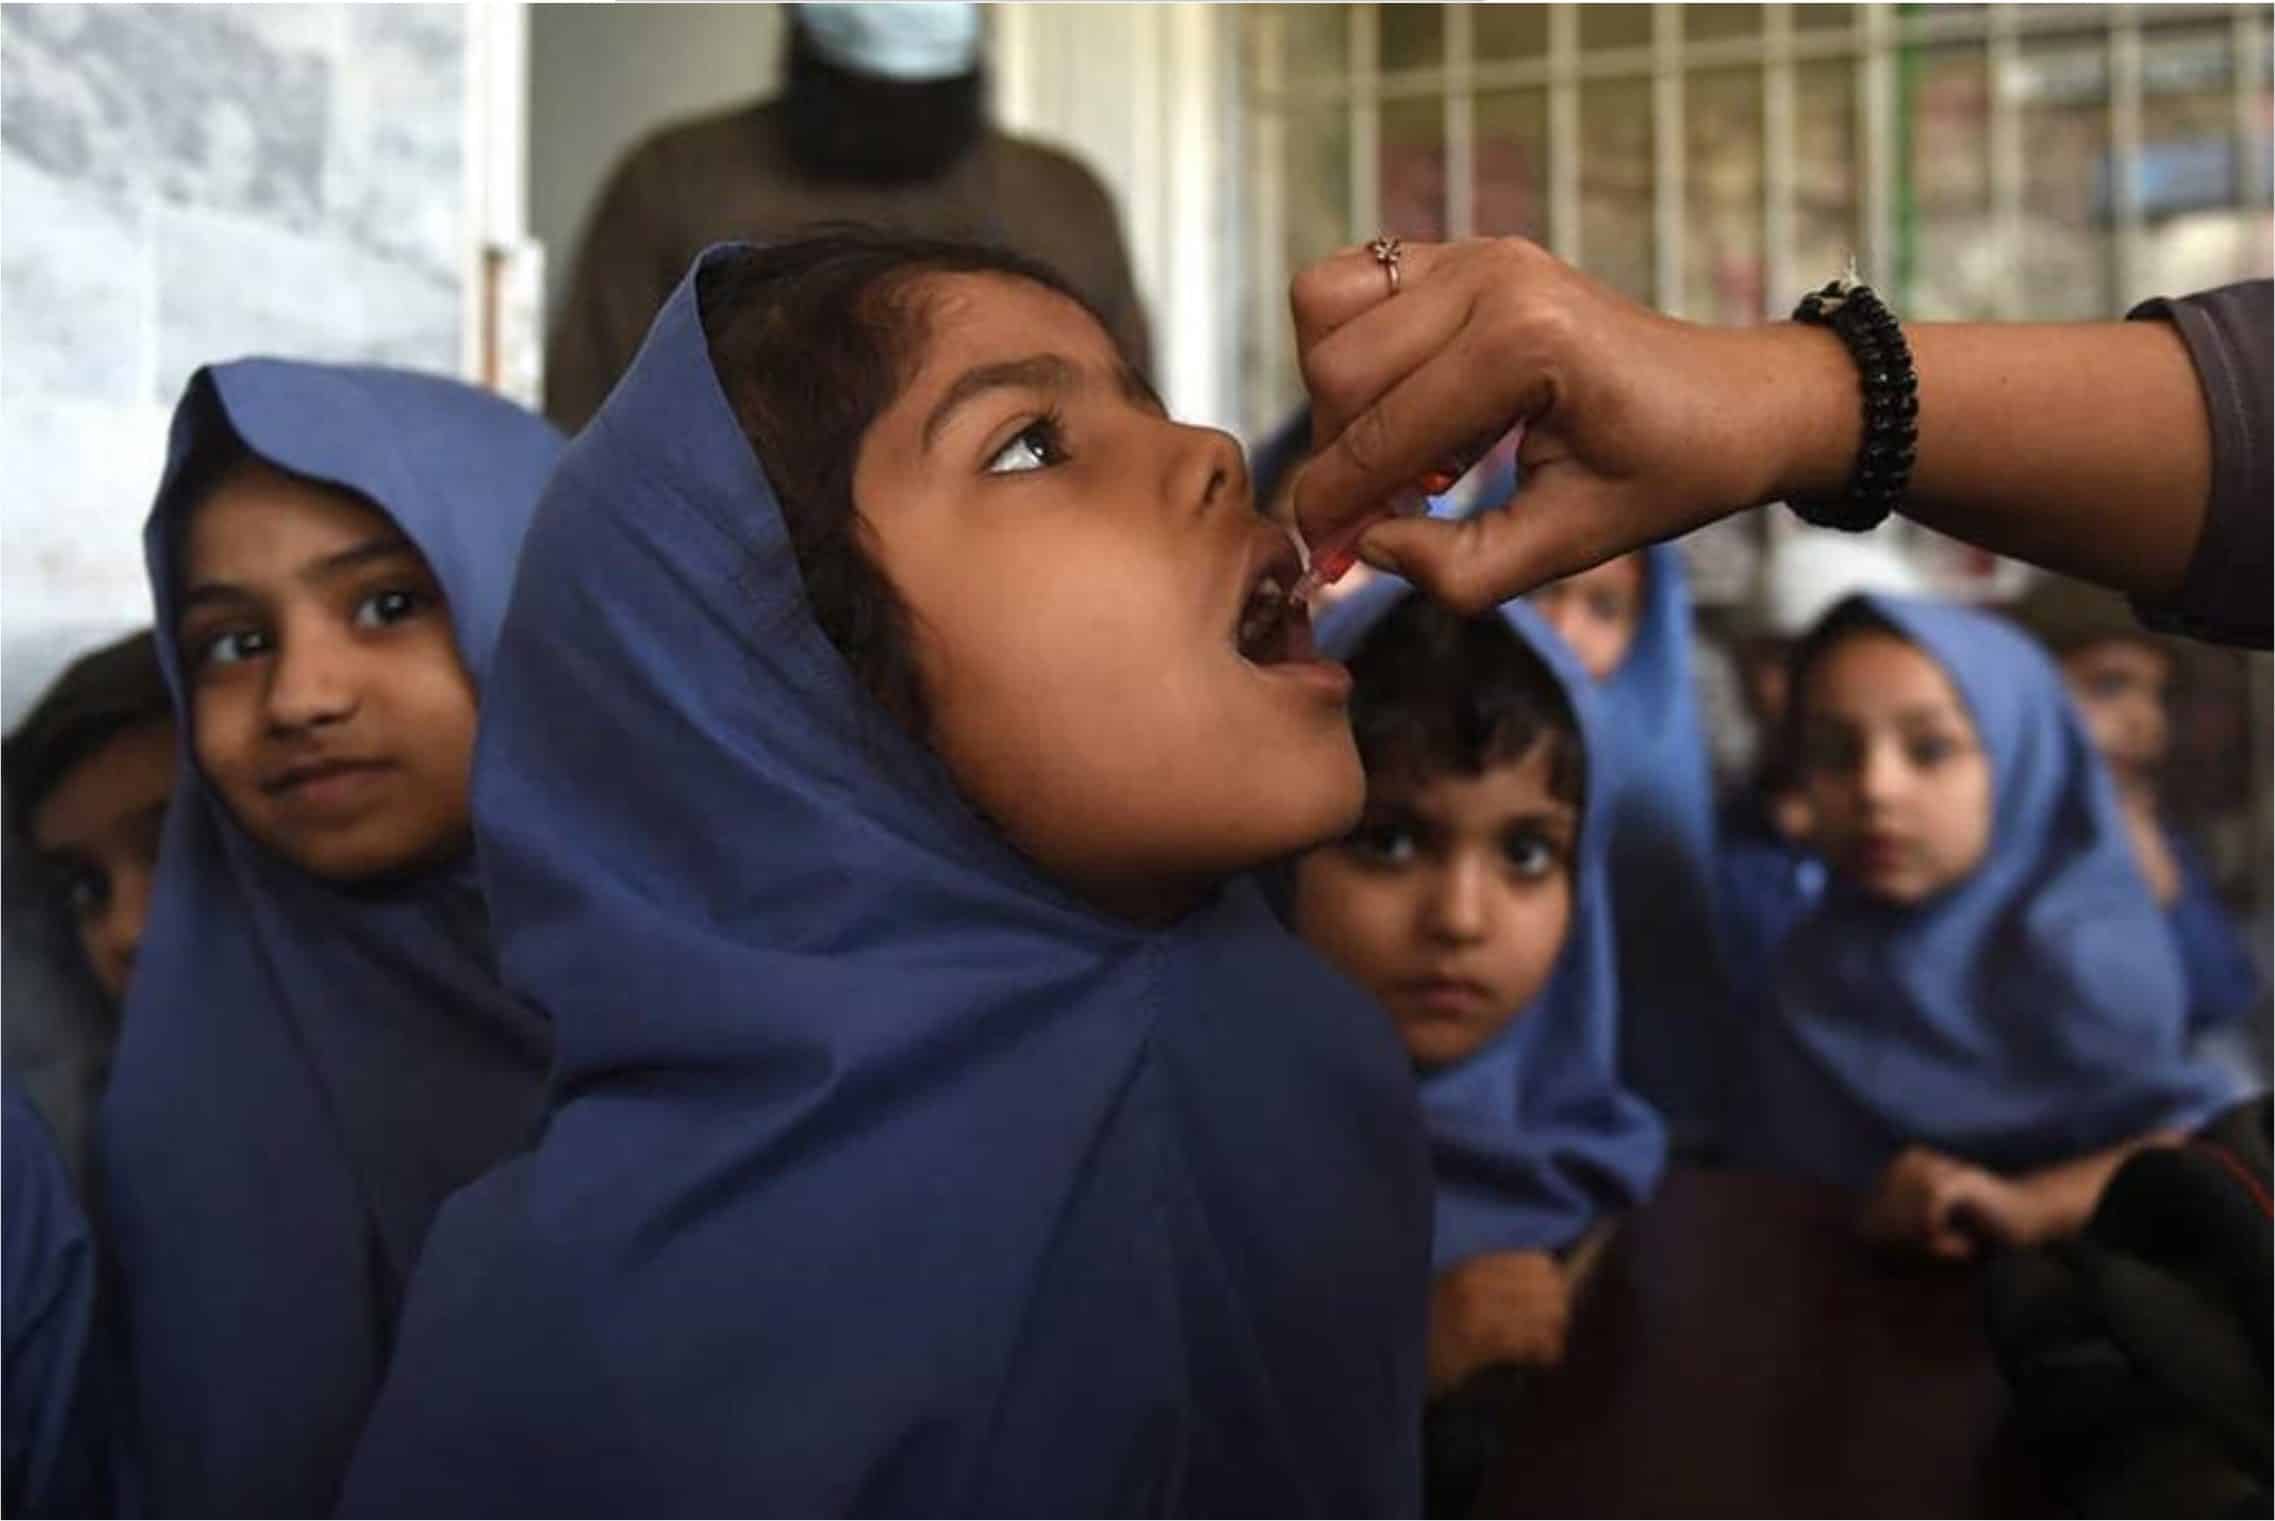 Children in Karachi, Pakistan wait their turn for polio vaccine